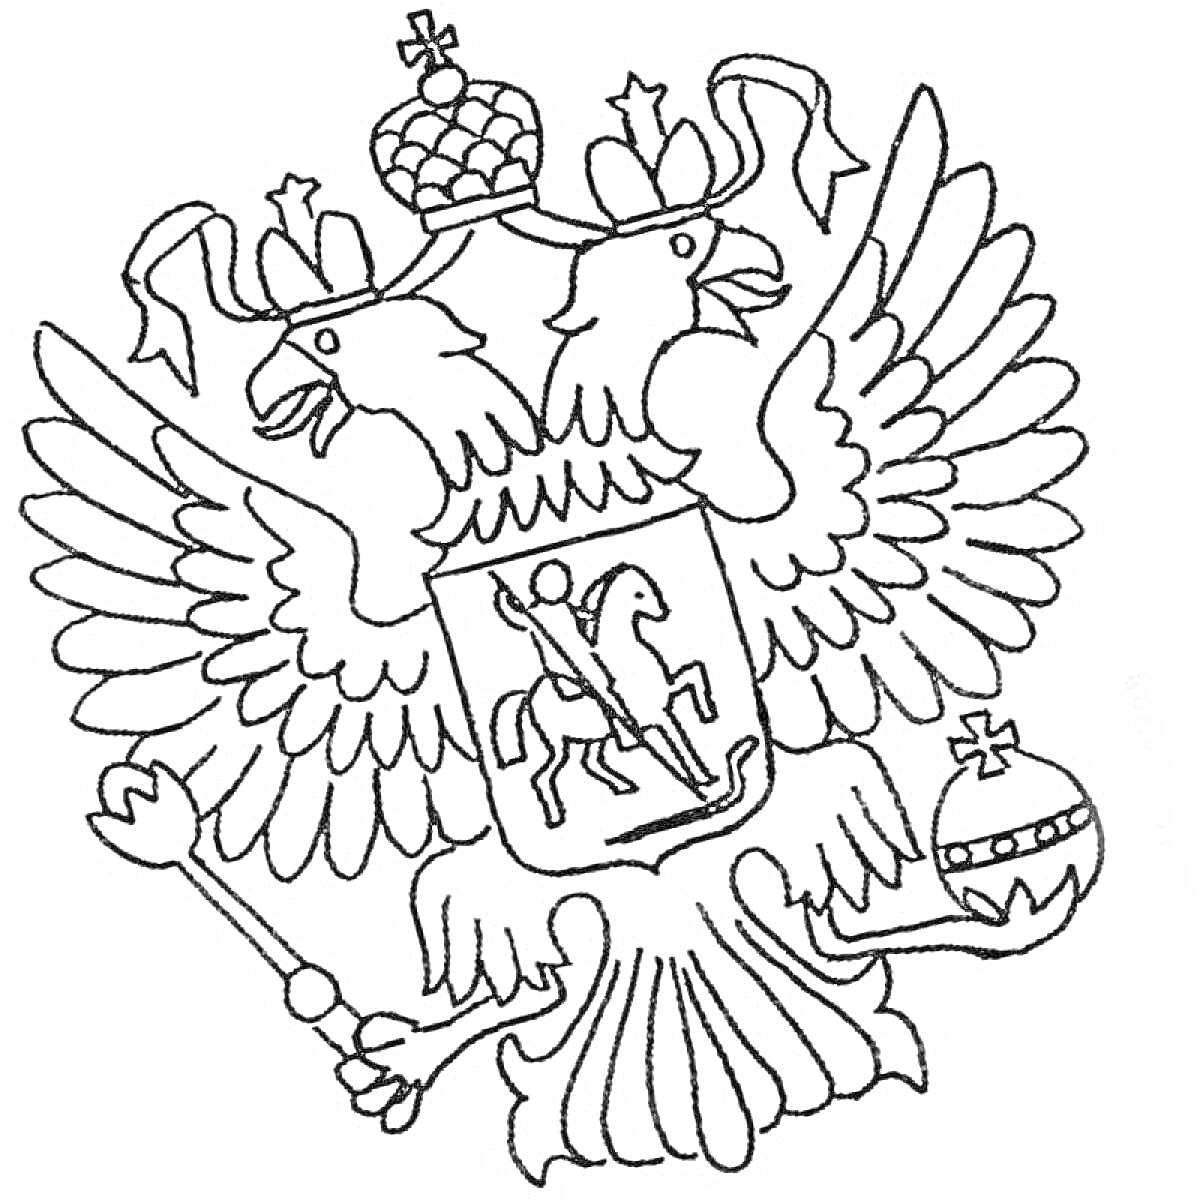 Раскраска герб России с двуглавым орлом, коронами, всадником, скипетром и державой